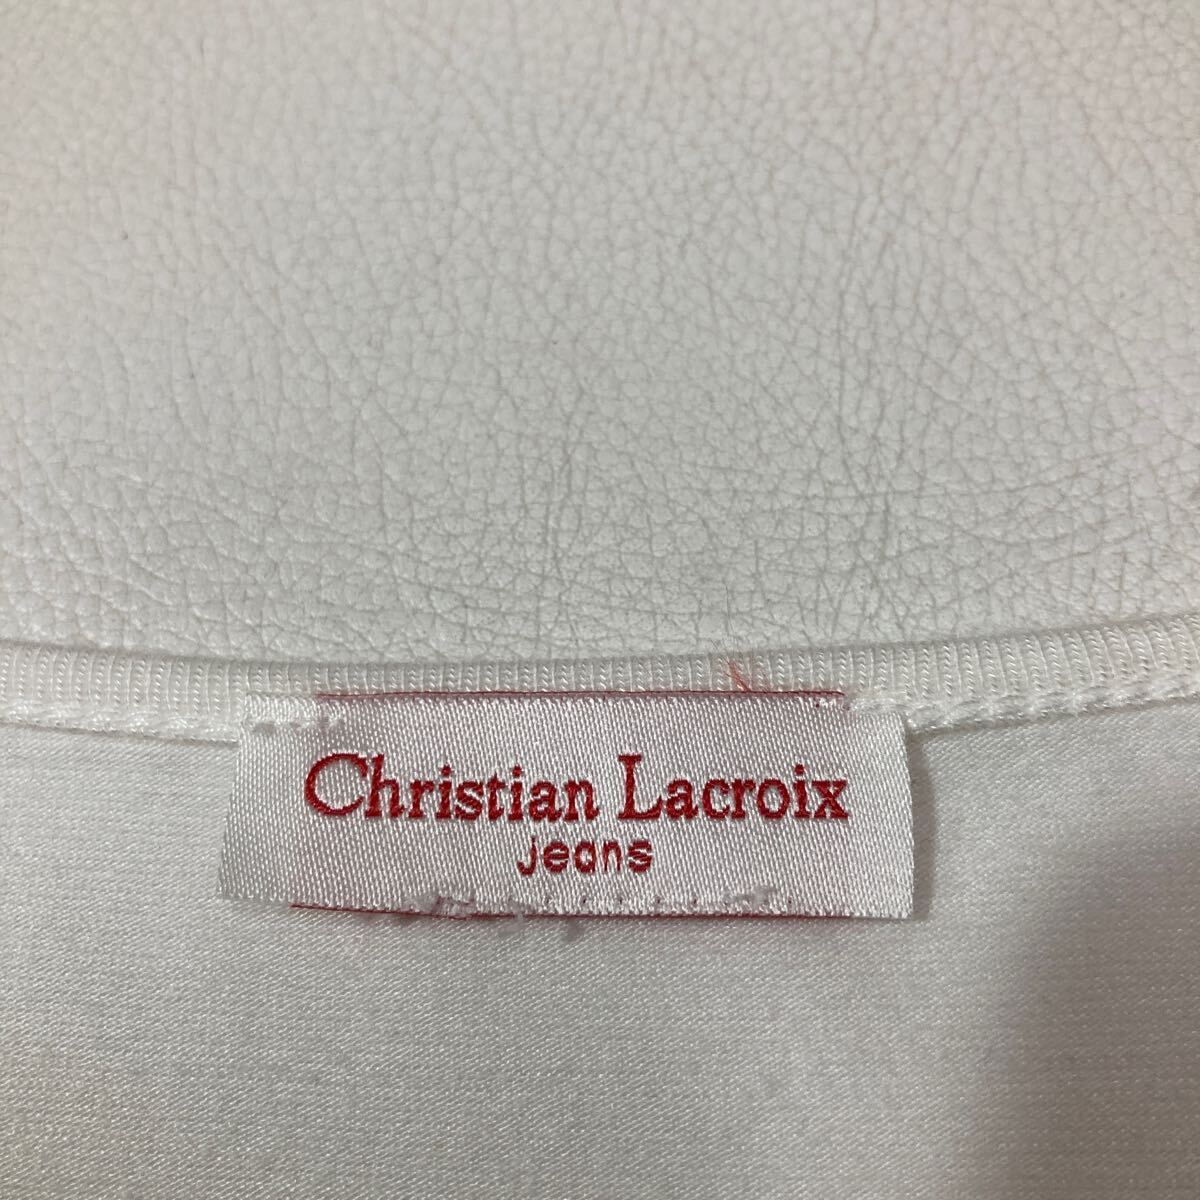 241 CHRISTIAN LACROIX Jeans Christian Lacroix стрейч Logo принт короткий рукав футболка cut and sewn белый весна лето 40427AA